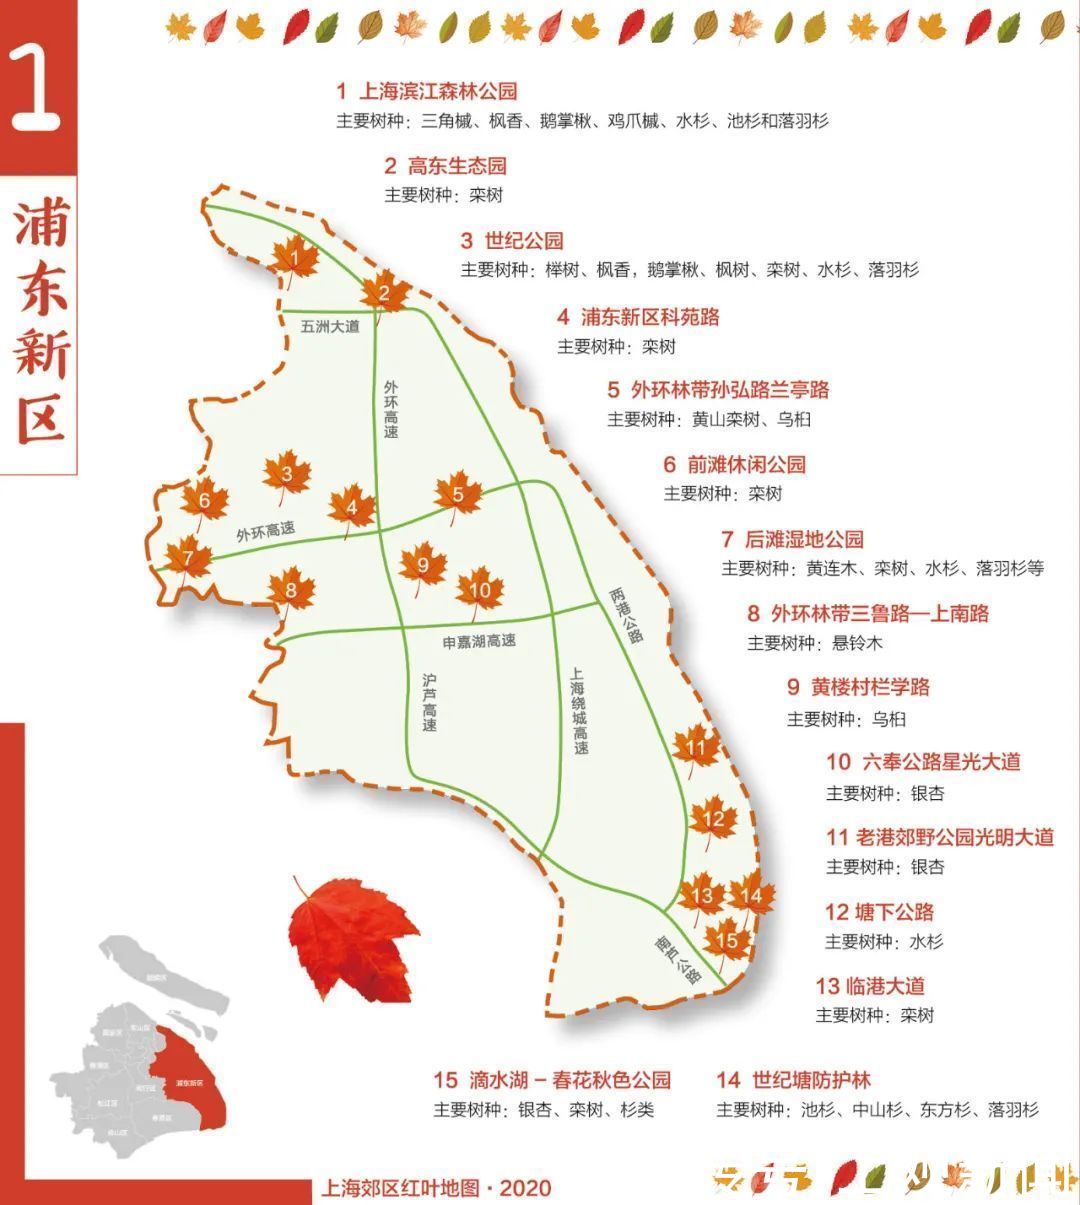 红叶 上海9个郊区最新红叶地图发布 一起来欣赏这幅五彩斑斓的画卷吧 红叶 郊区 地图 画卷 欣赏 上海 易坊好文馆